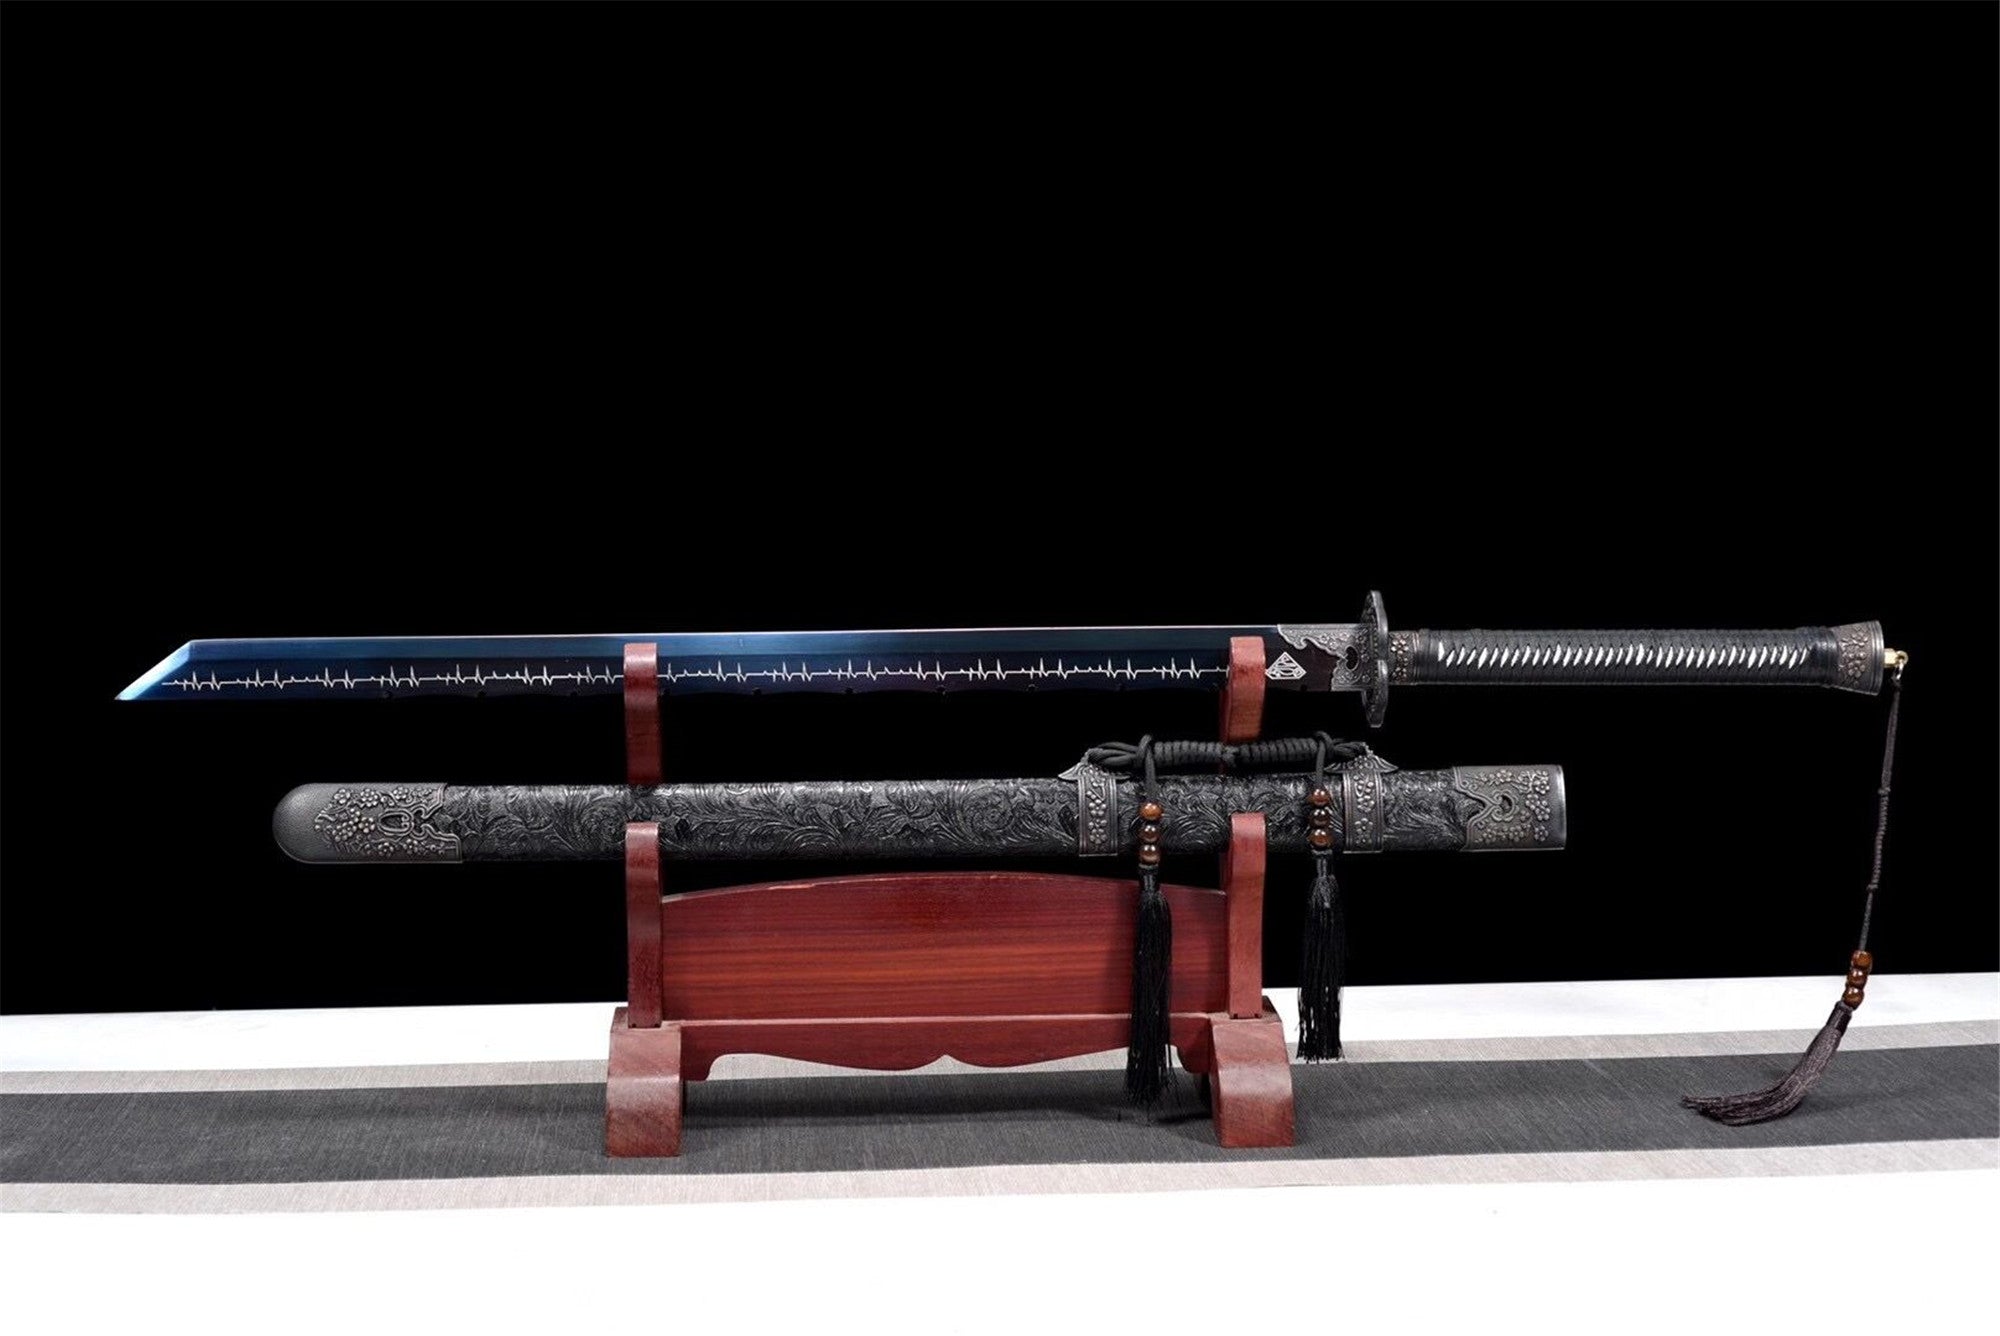 Jumping Soul Slash,Skip to my lou,Tang-Horizontal sword,Real Tang Sword,Handmade Chinese Sword,Longquan sword